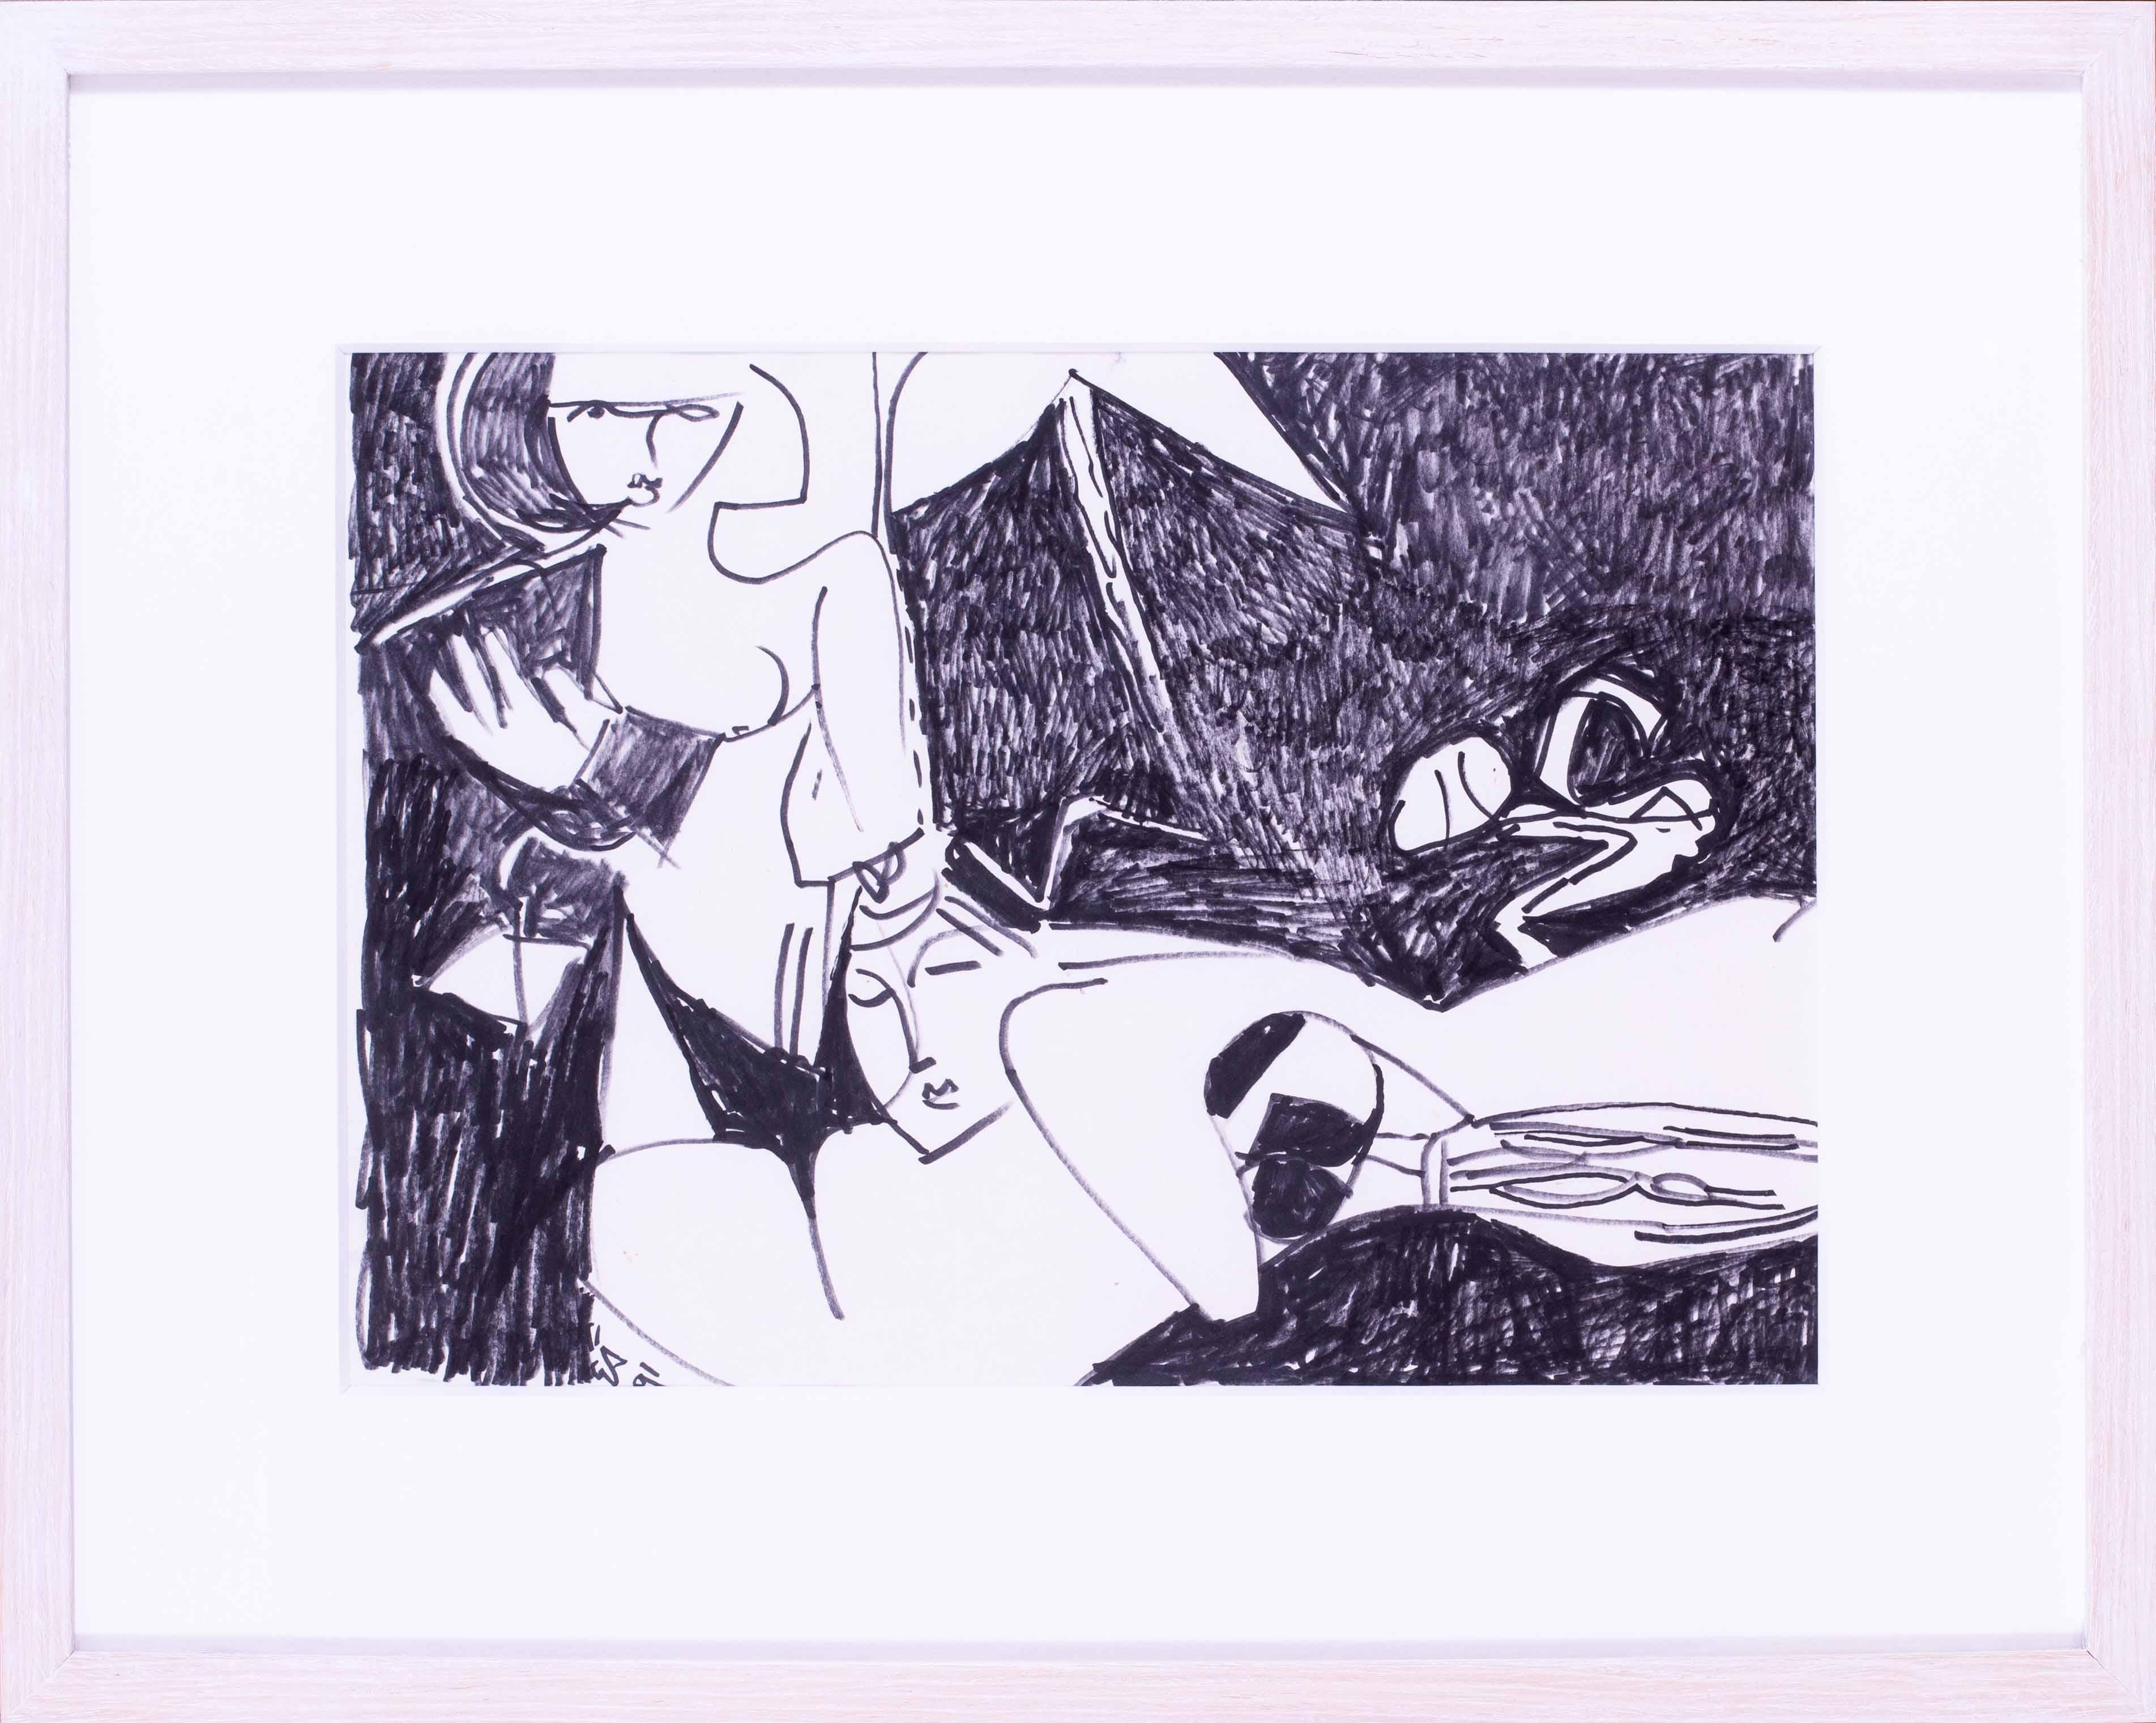 Schwarz-Weiß-Skizze von zwei Frauen des modernen britischen Künstlers Ewart Johns